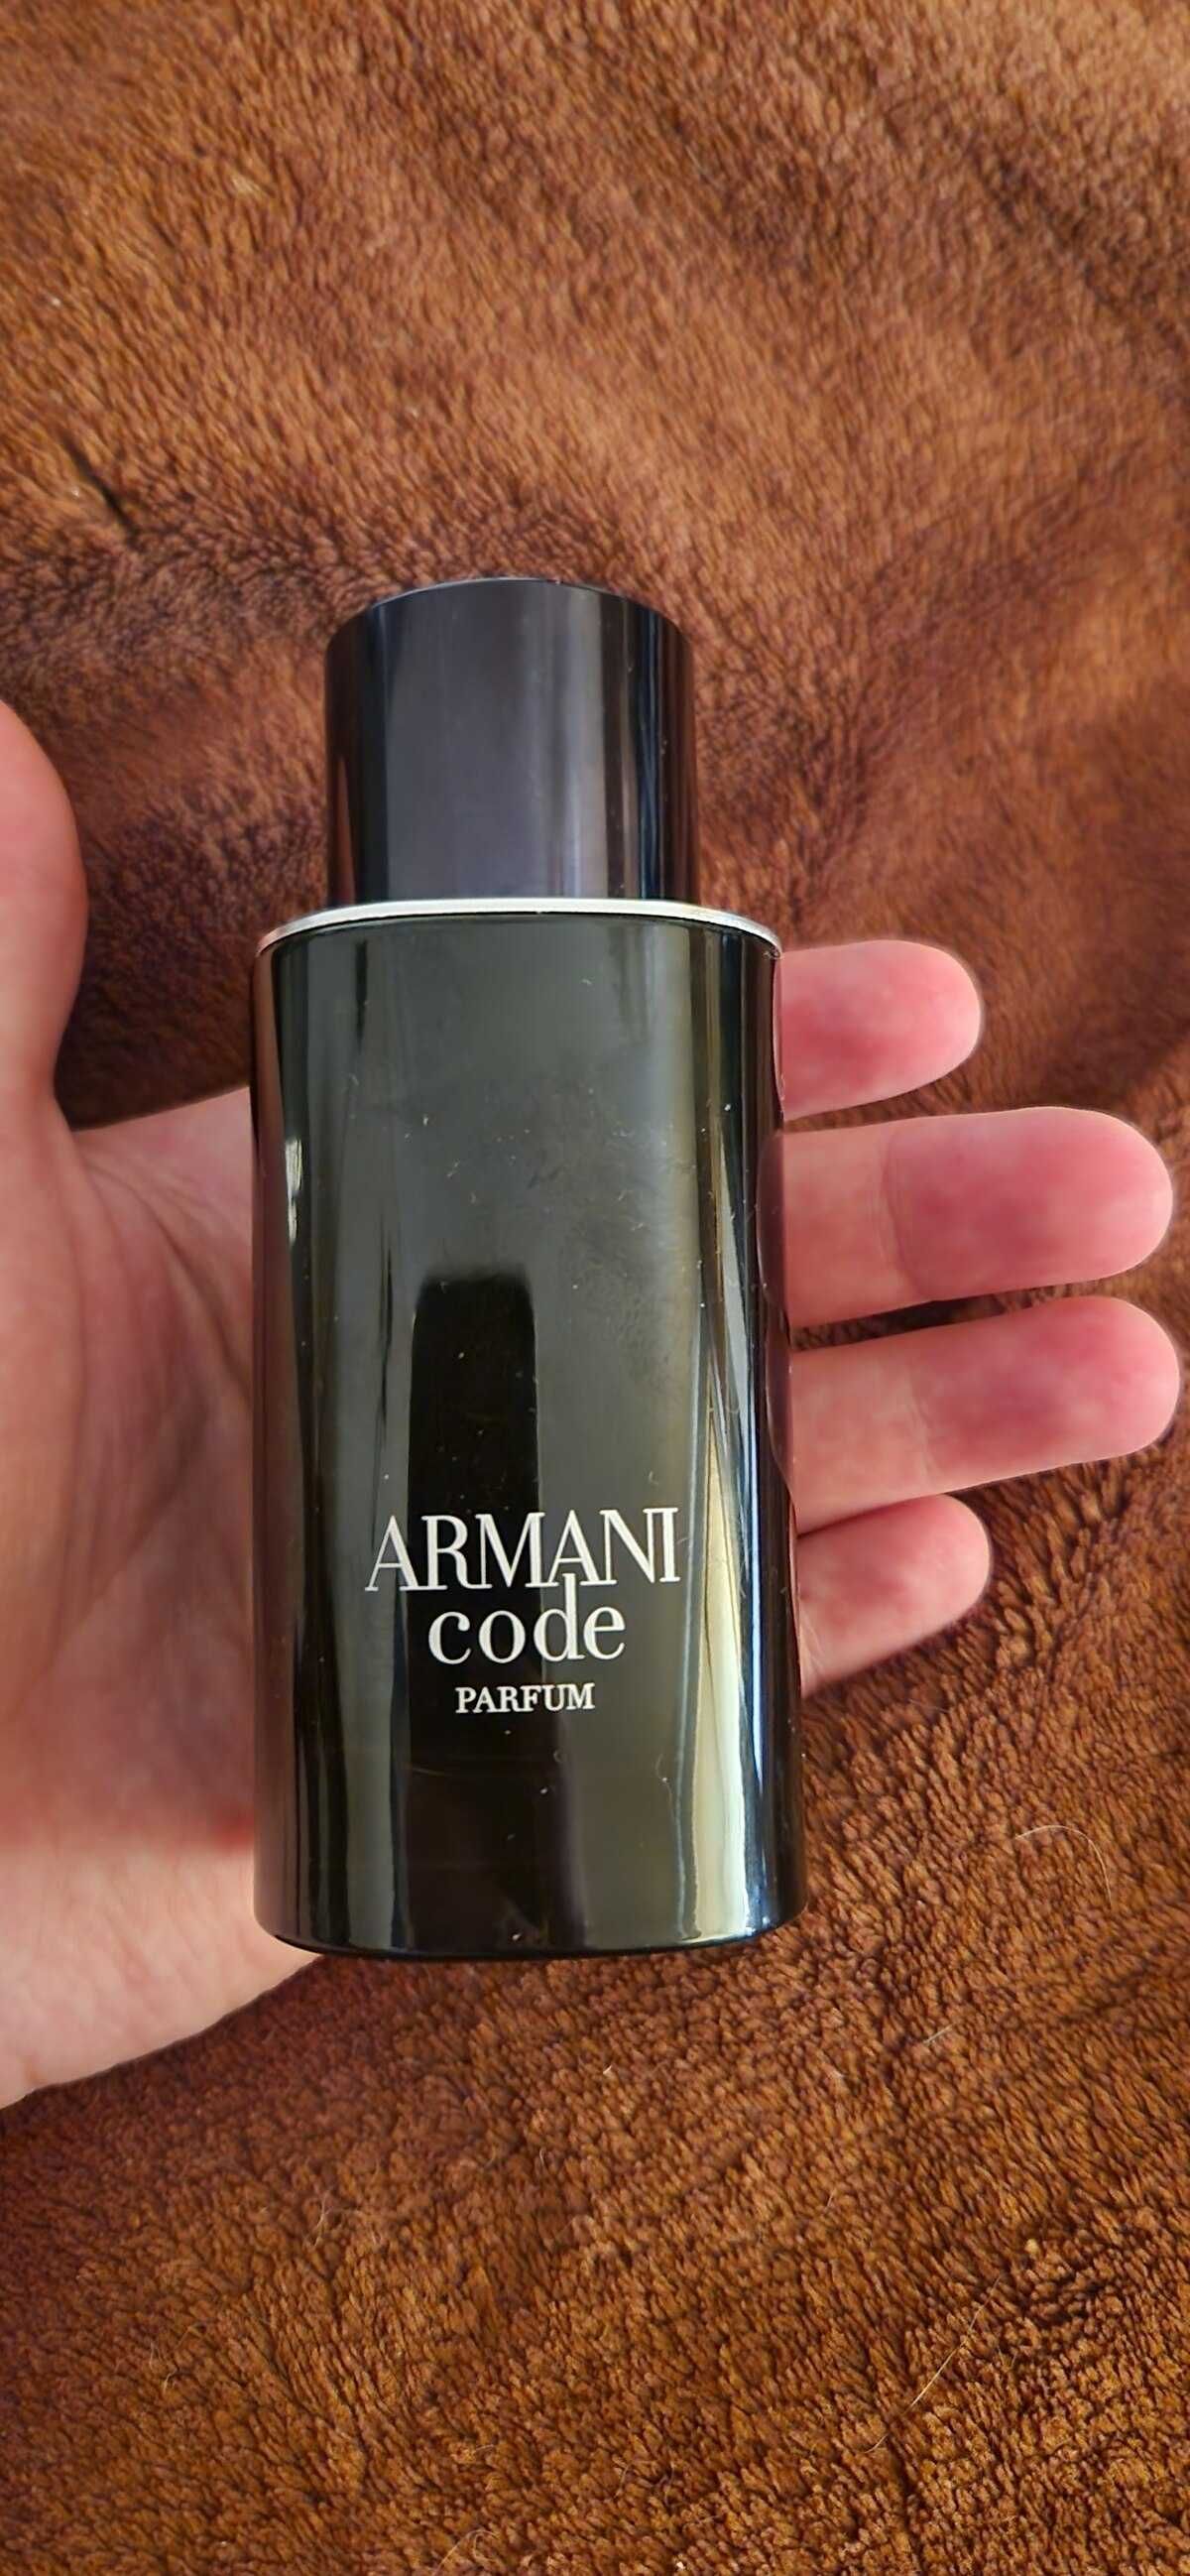 Armani Code Parfum
Giorgio Armani